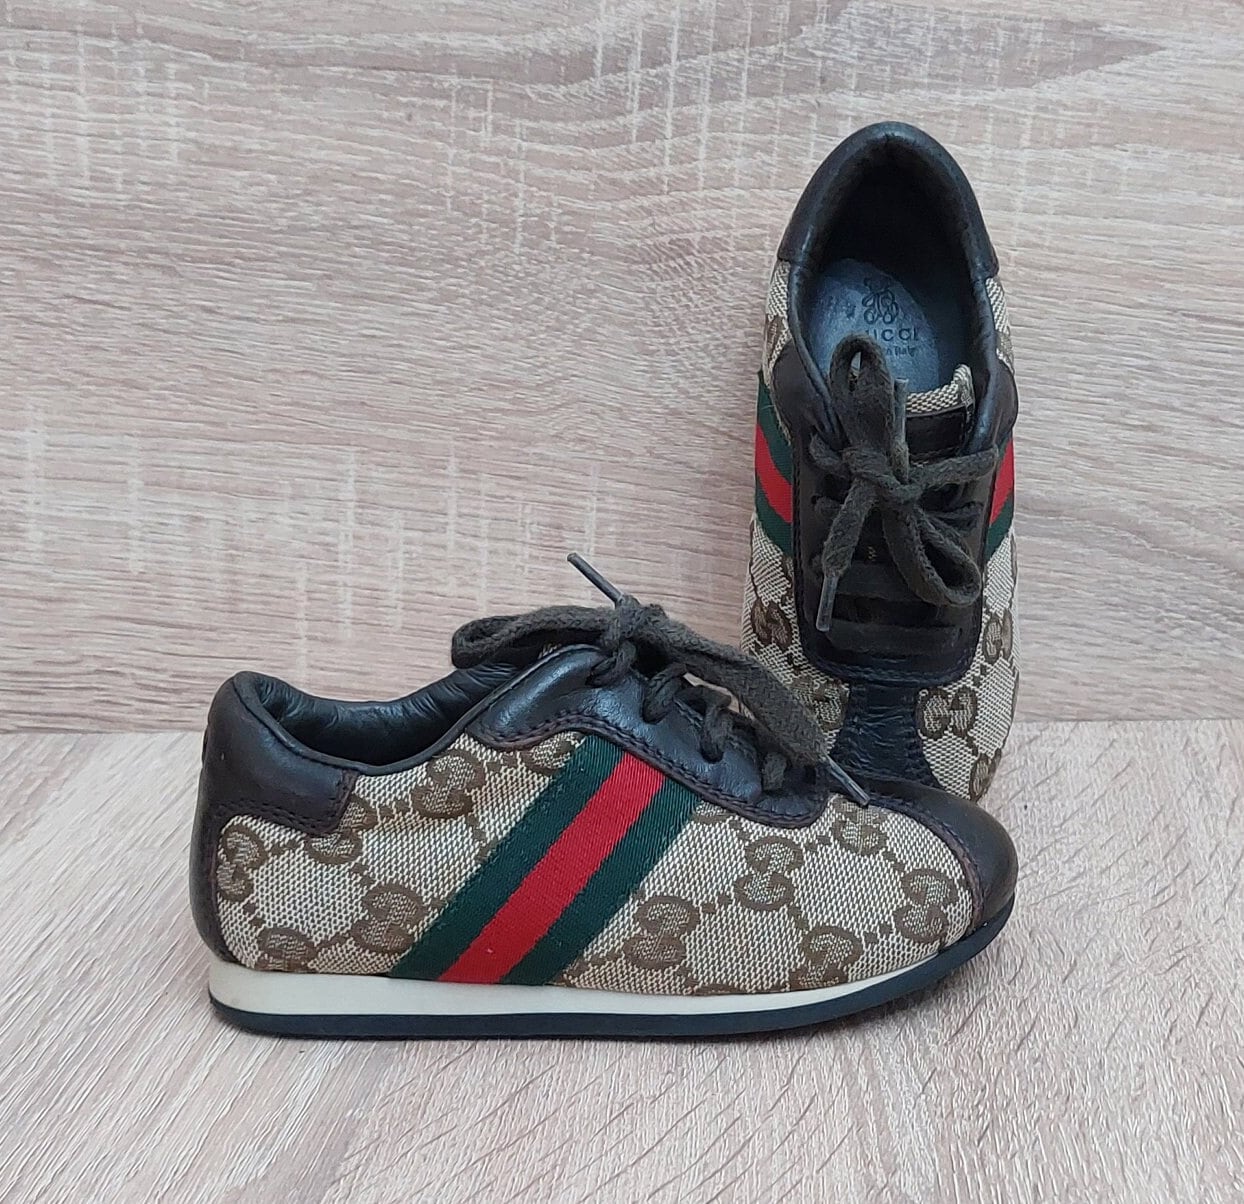 millimeter Afskrække hobby VTG Gucci Made in Italy Shoes Sneakers Size: US 6 UK 5 / 22 - Etsy